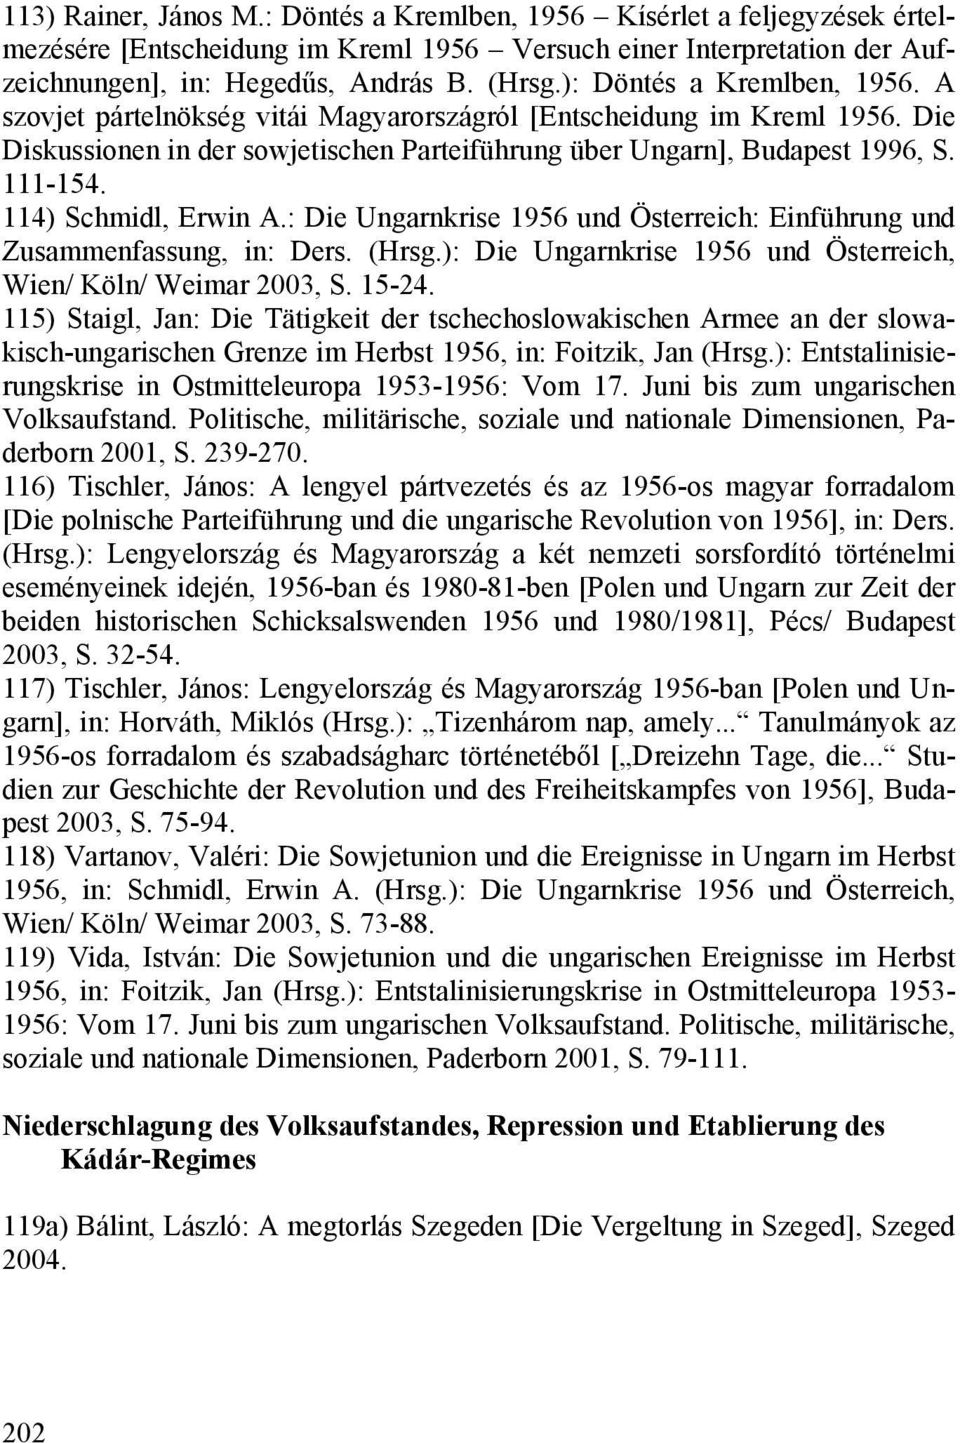 114) Schmidl, Erwin A.: Die Ungarnkrise 1956 und Österreich: Einführung und Zusammenfassung, in: Ders. (Hrsg.): Die Ungarnkrise 1956 und Österreich, Wien/ Köln/ Weimar 2003, S. 15-24.